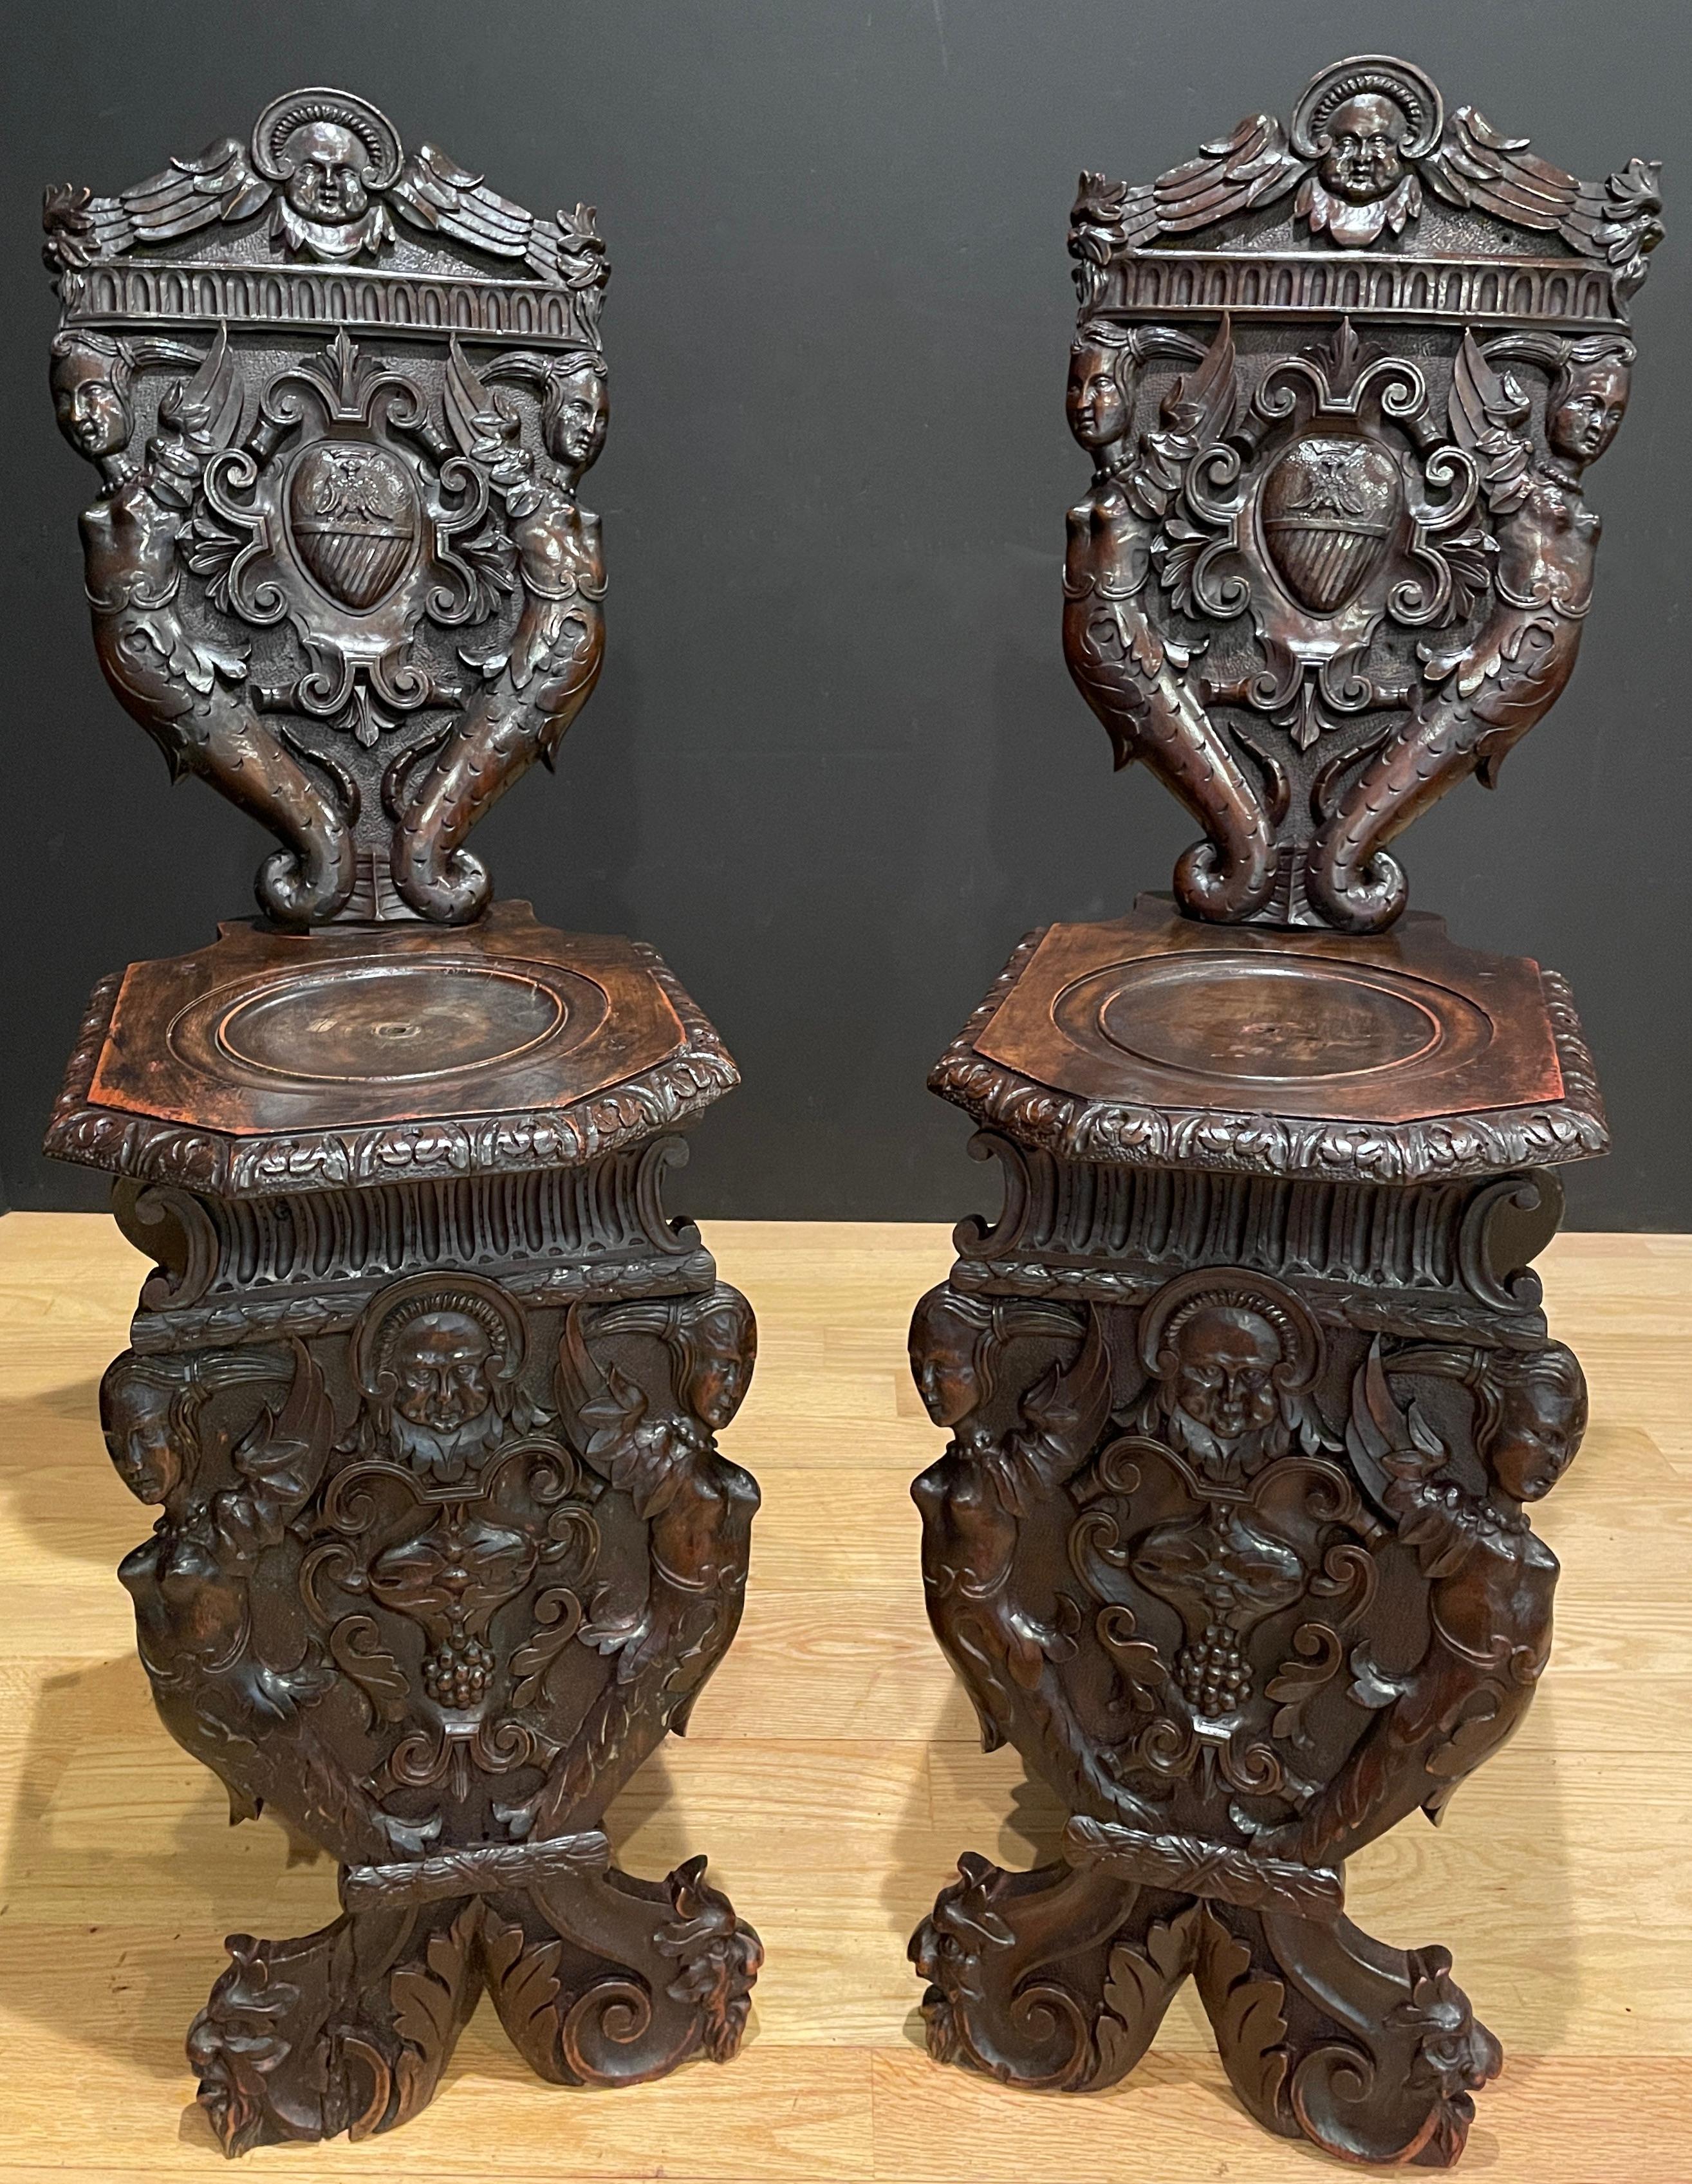 Antikes Paar figuraler, stark geschnitzter Nussbaum-Sgabello-Stühle. 
Geflügelte Figuren und barocke Muster.
Der sgabello ist eine Art Stuhl oder Hocker mit geschnitzten und oft kunstvoll verzierten Holzbeinen und Rückenlehnen. Die Form stammt aus